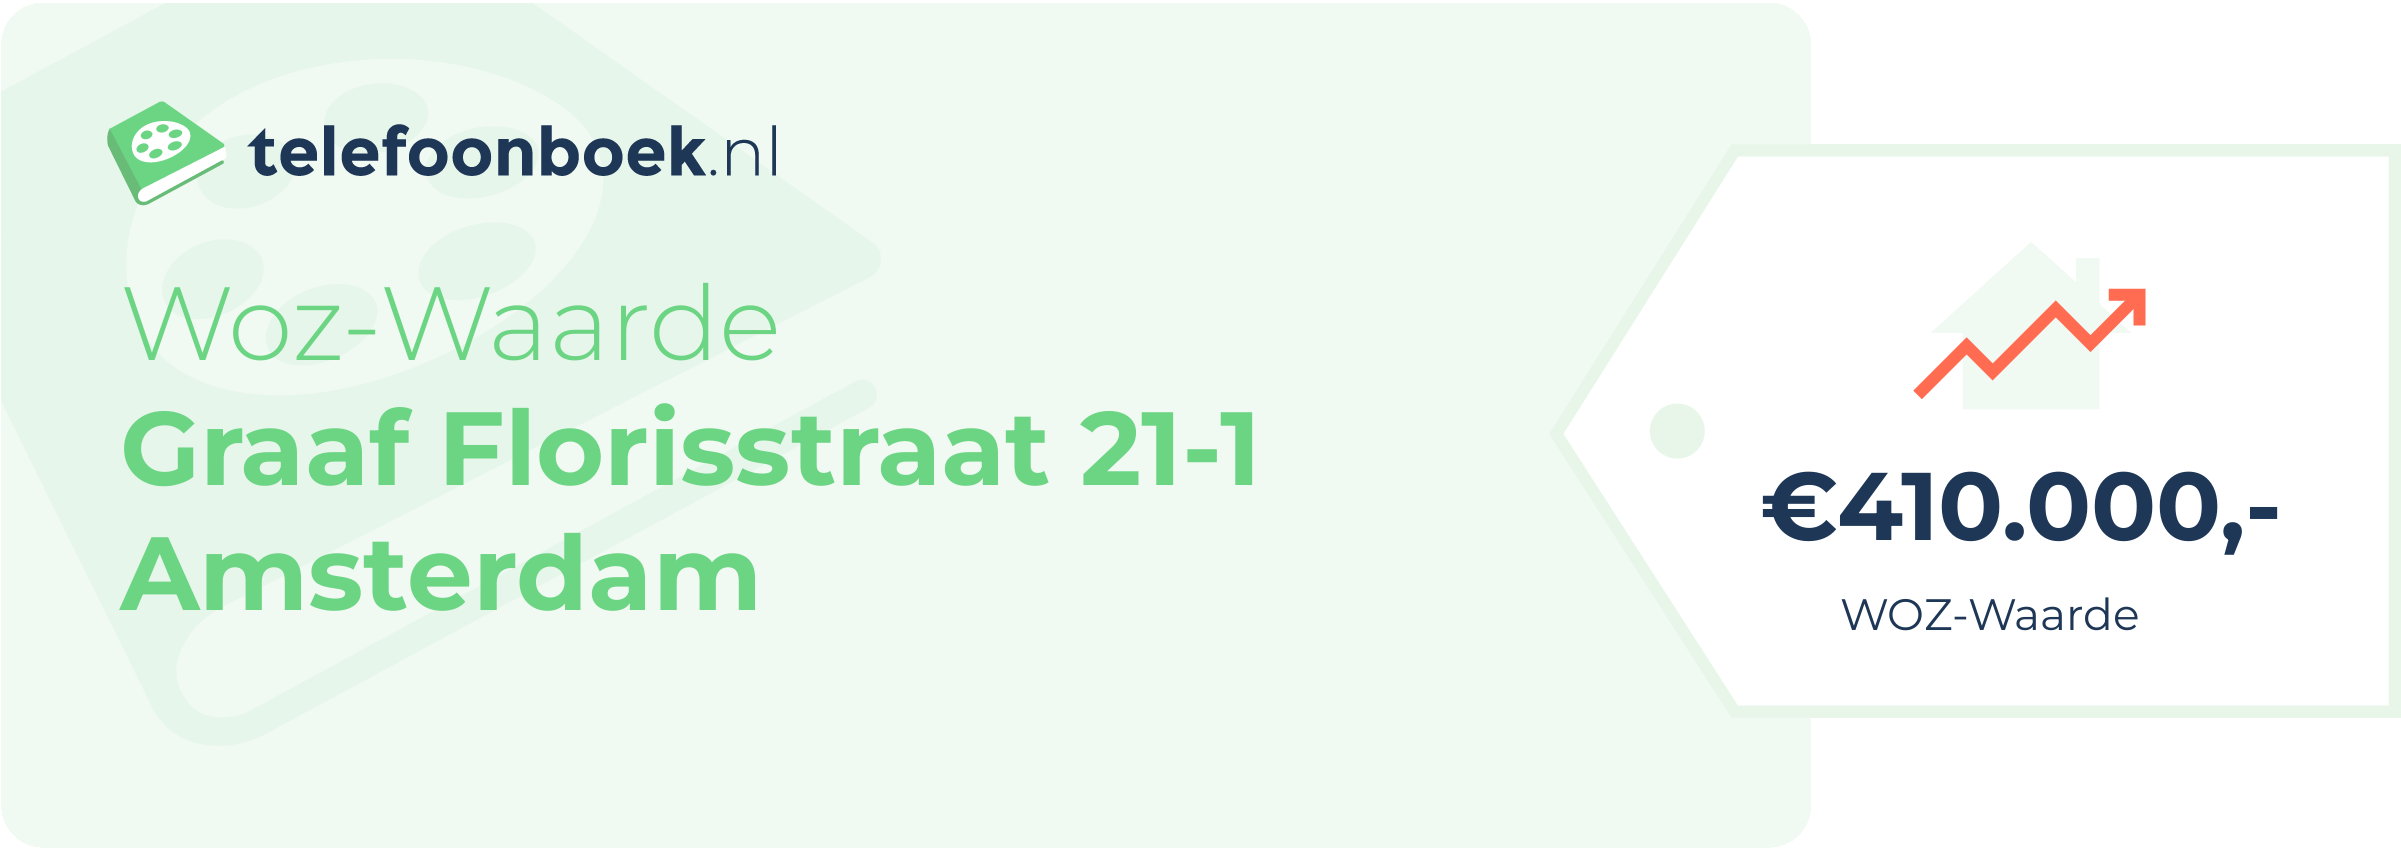 WOZ-waarde Graaf Florisstraat 21-1 Amsterdam